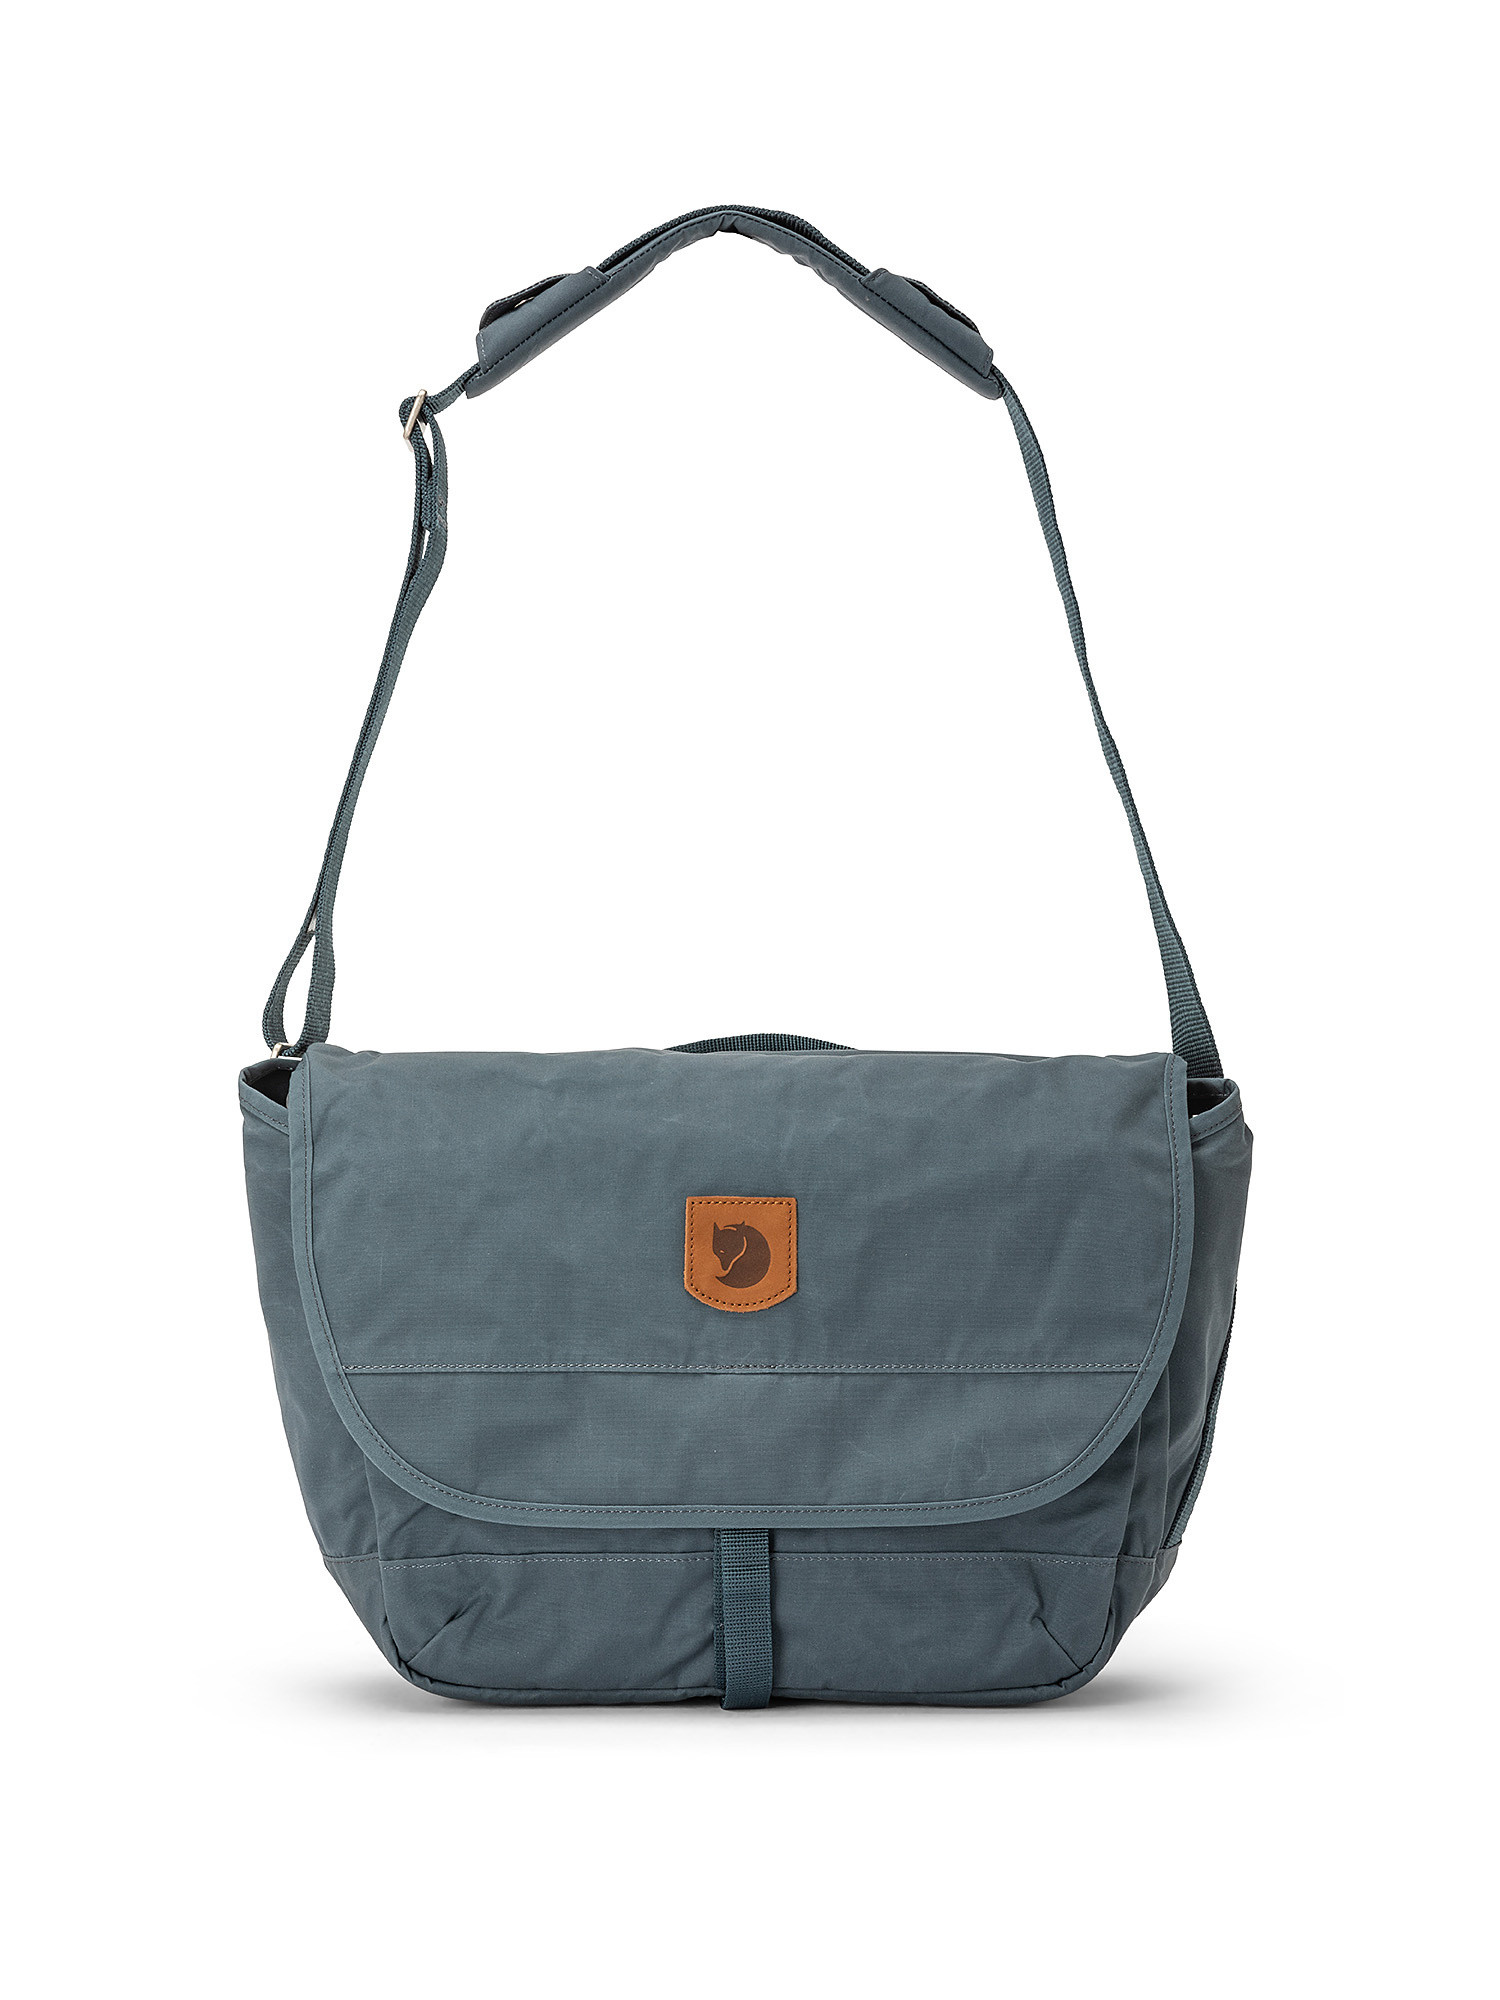 School-bag, Grey, large image number 0